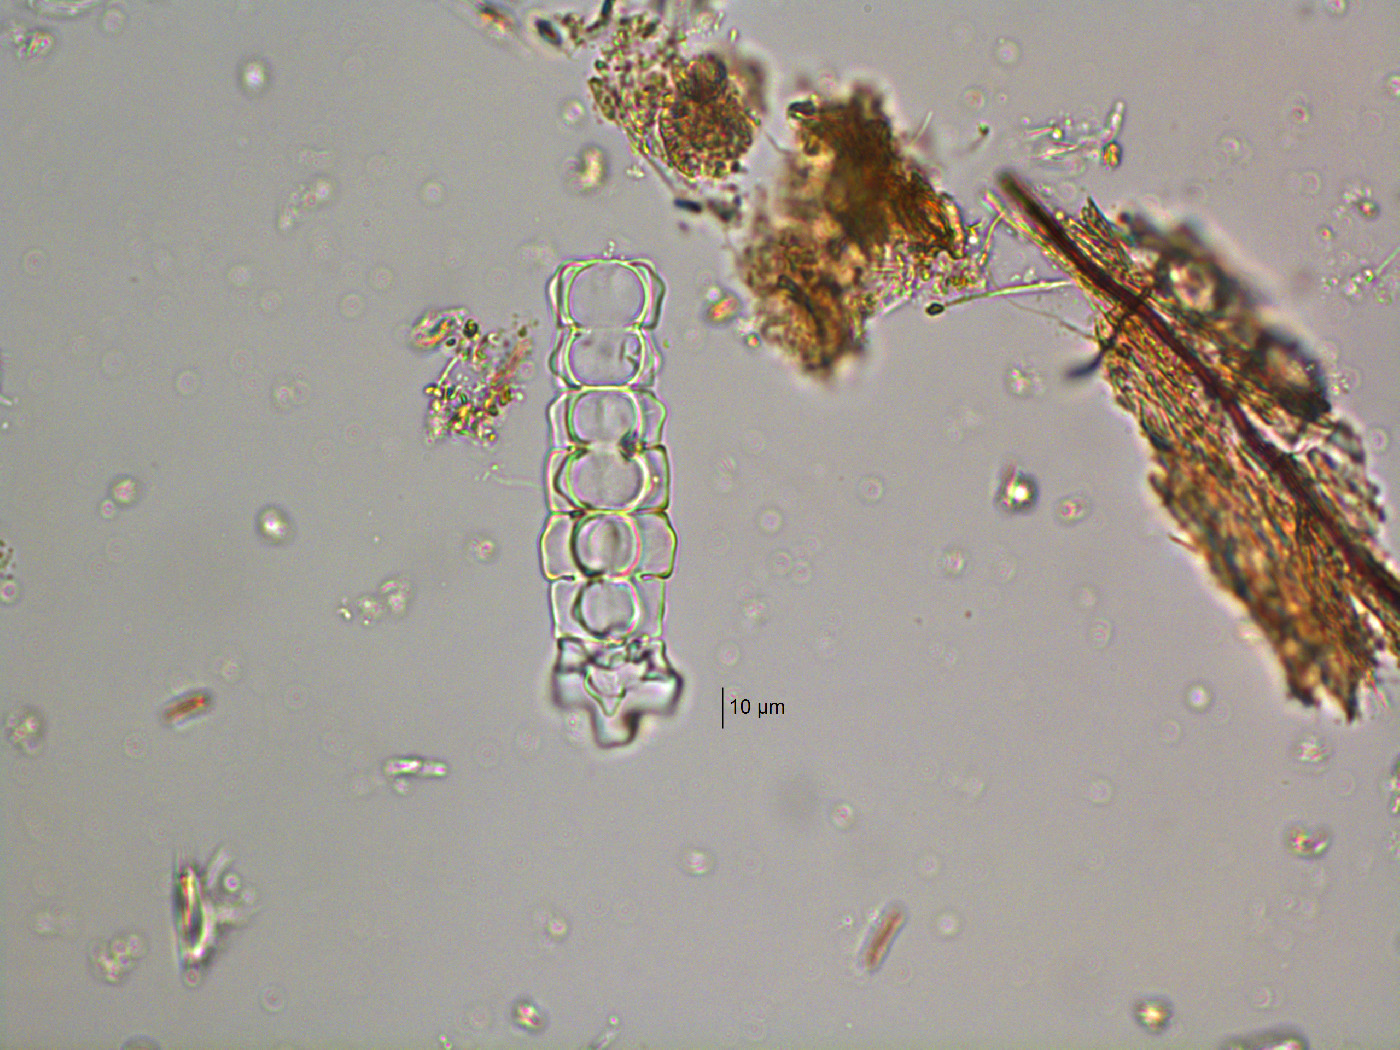 Phymatodocis image